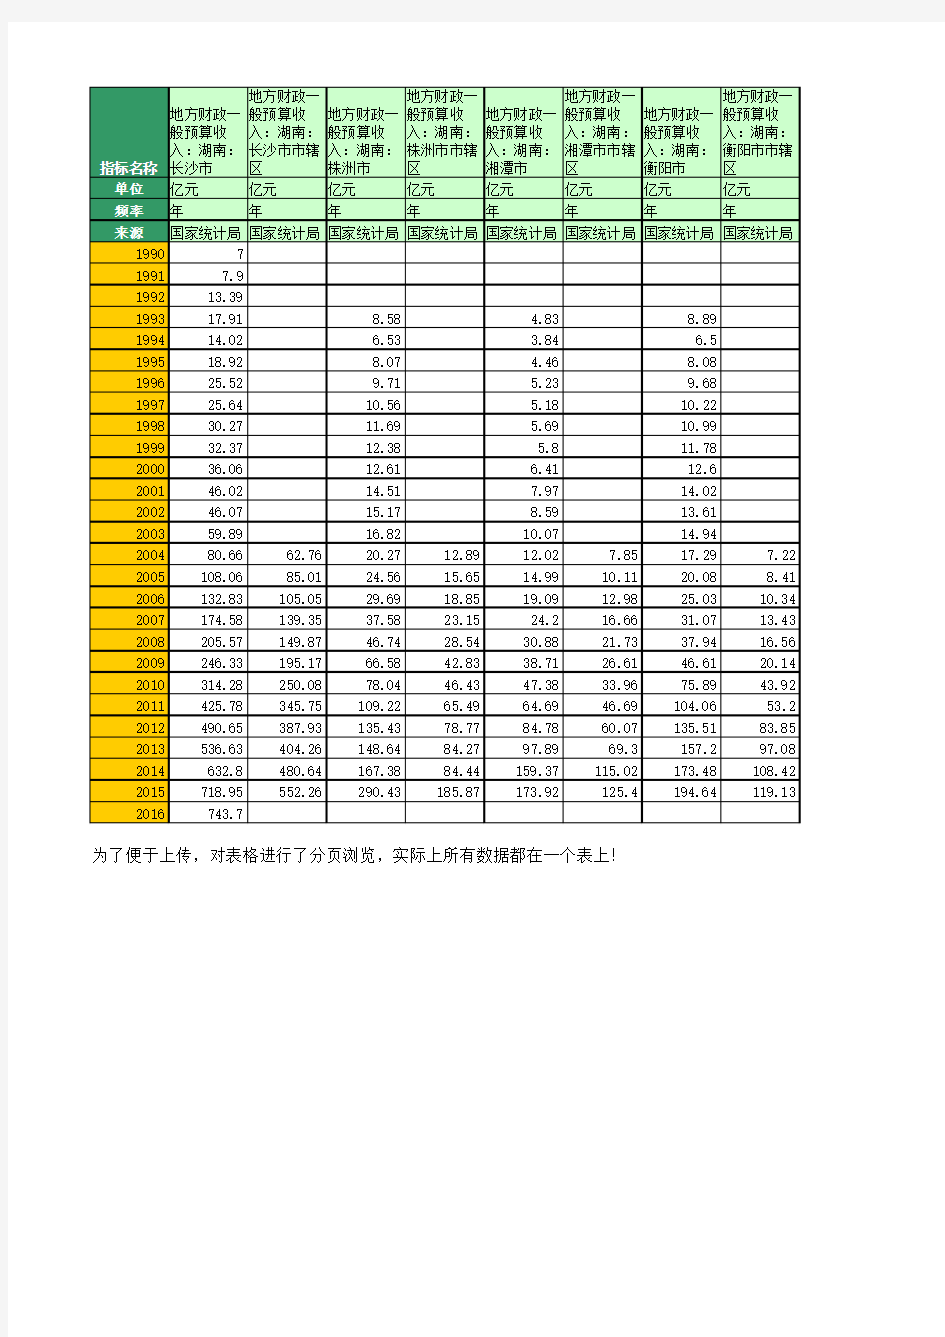 地方财政预算收入：湖南(1990年至2016年)